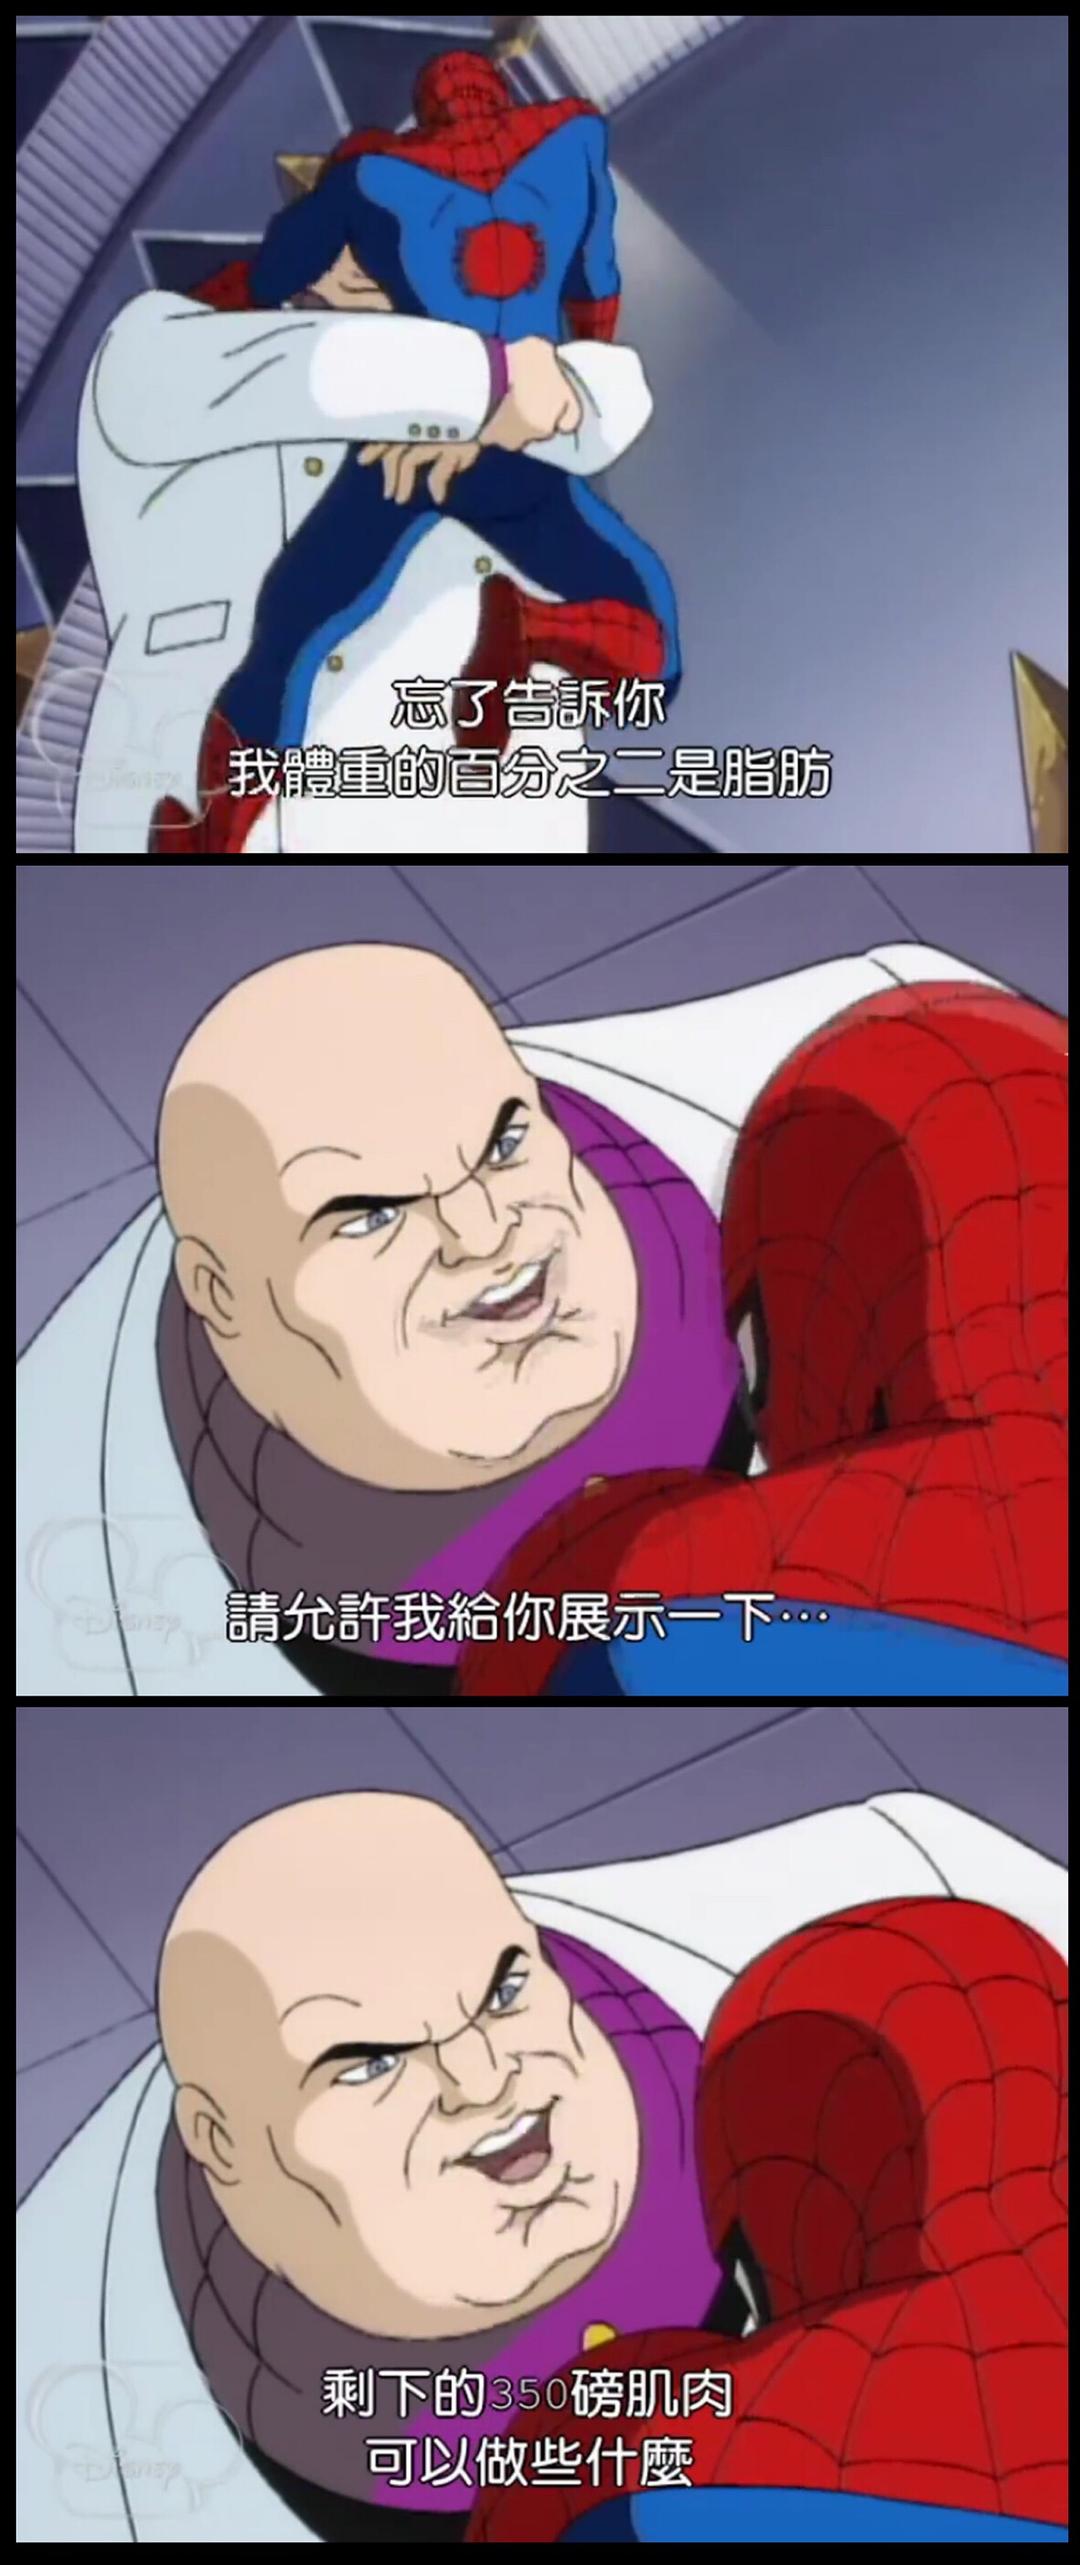 蜘蛛侠 第一季 剧照8